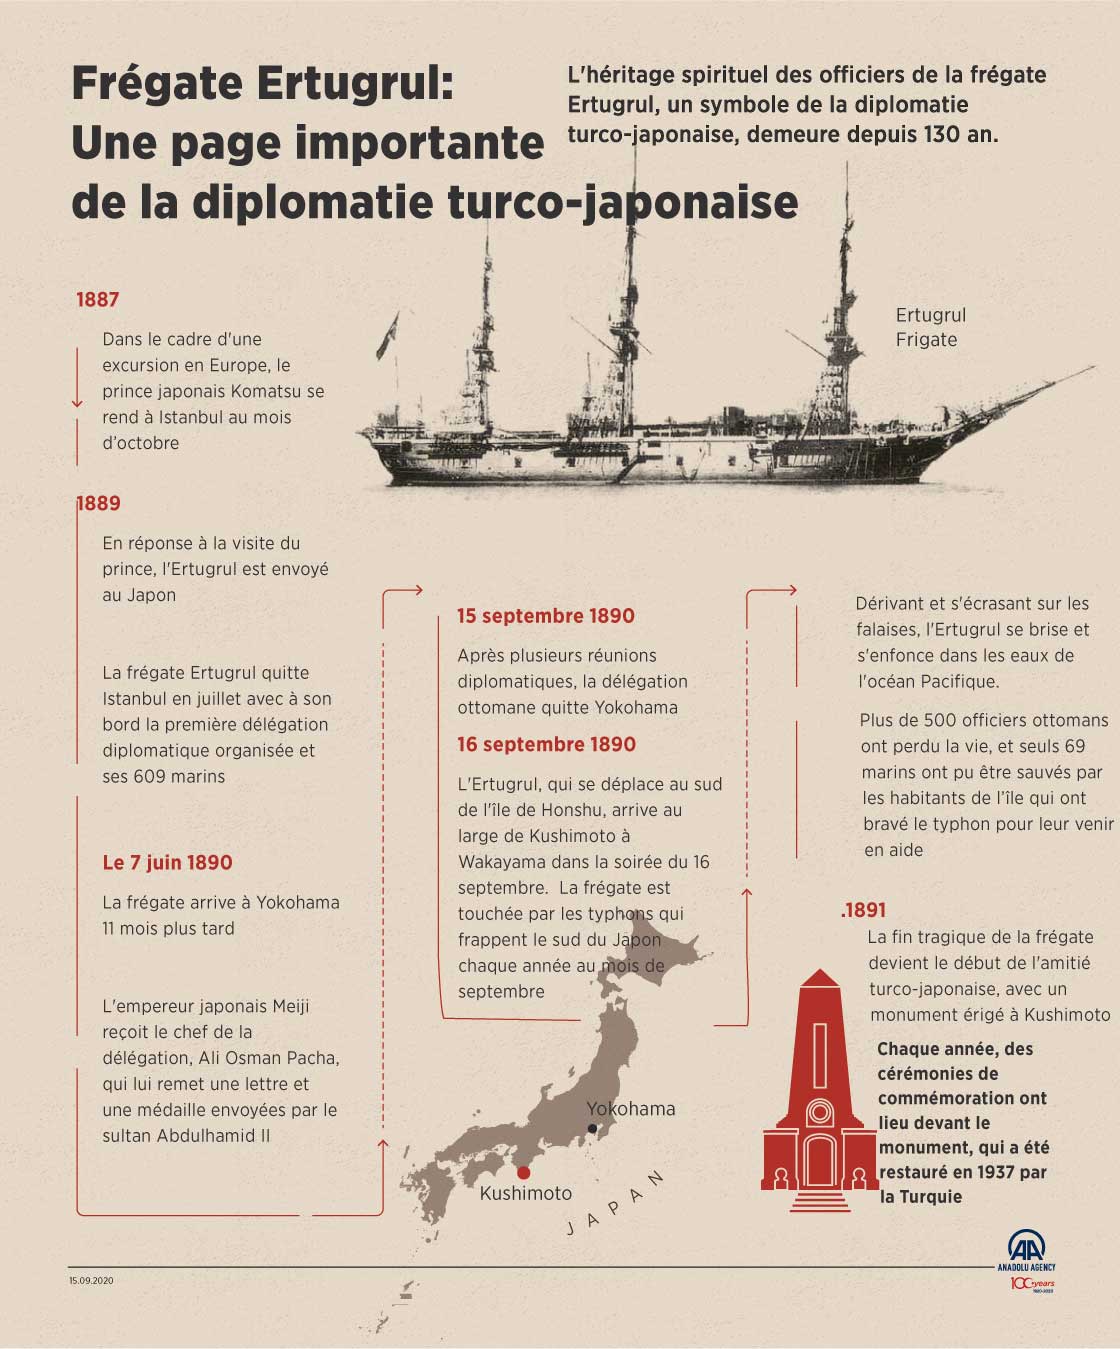 Frégate Ertugrul : Une page importante de la diplomatie turco-japonaise